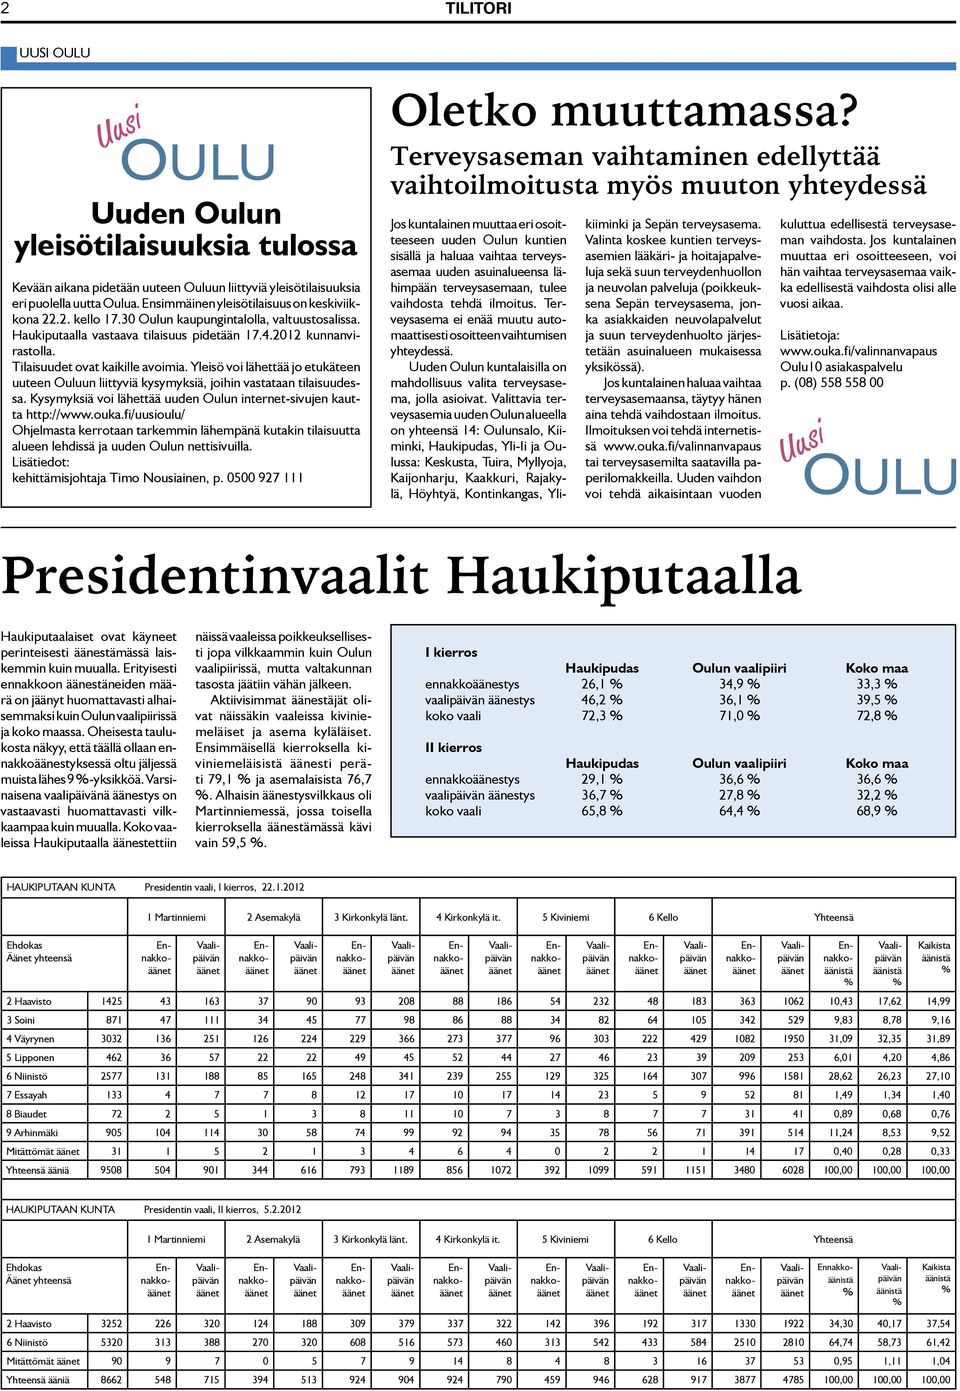 Yleisö voi lähettää jo etukäteen uuteen Ouluun liittyviä kysymyksiä, joihin vastataan tilaisuudessa. Kysymyksiä voi lähettää uuden Oulun internet-sivujen kautta http://www.ouka.